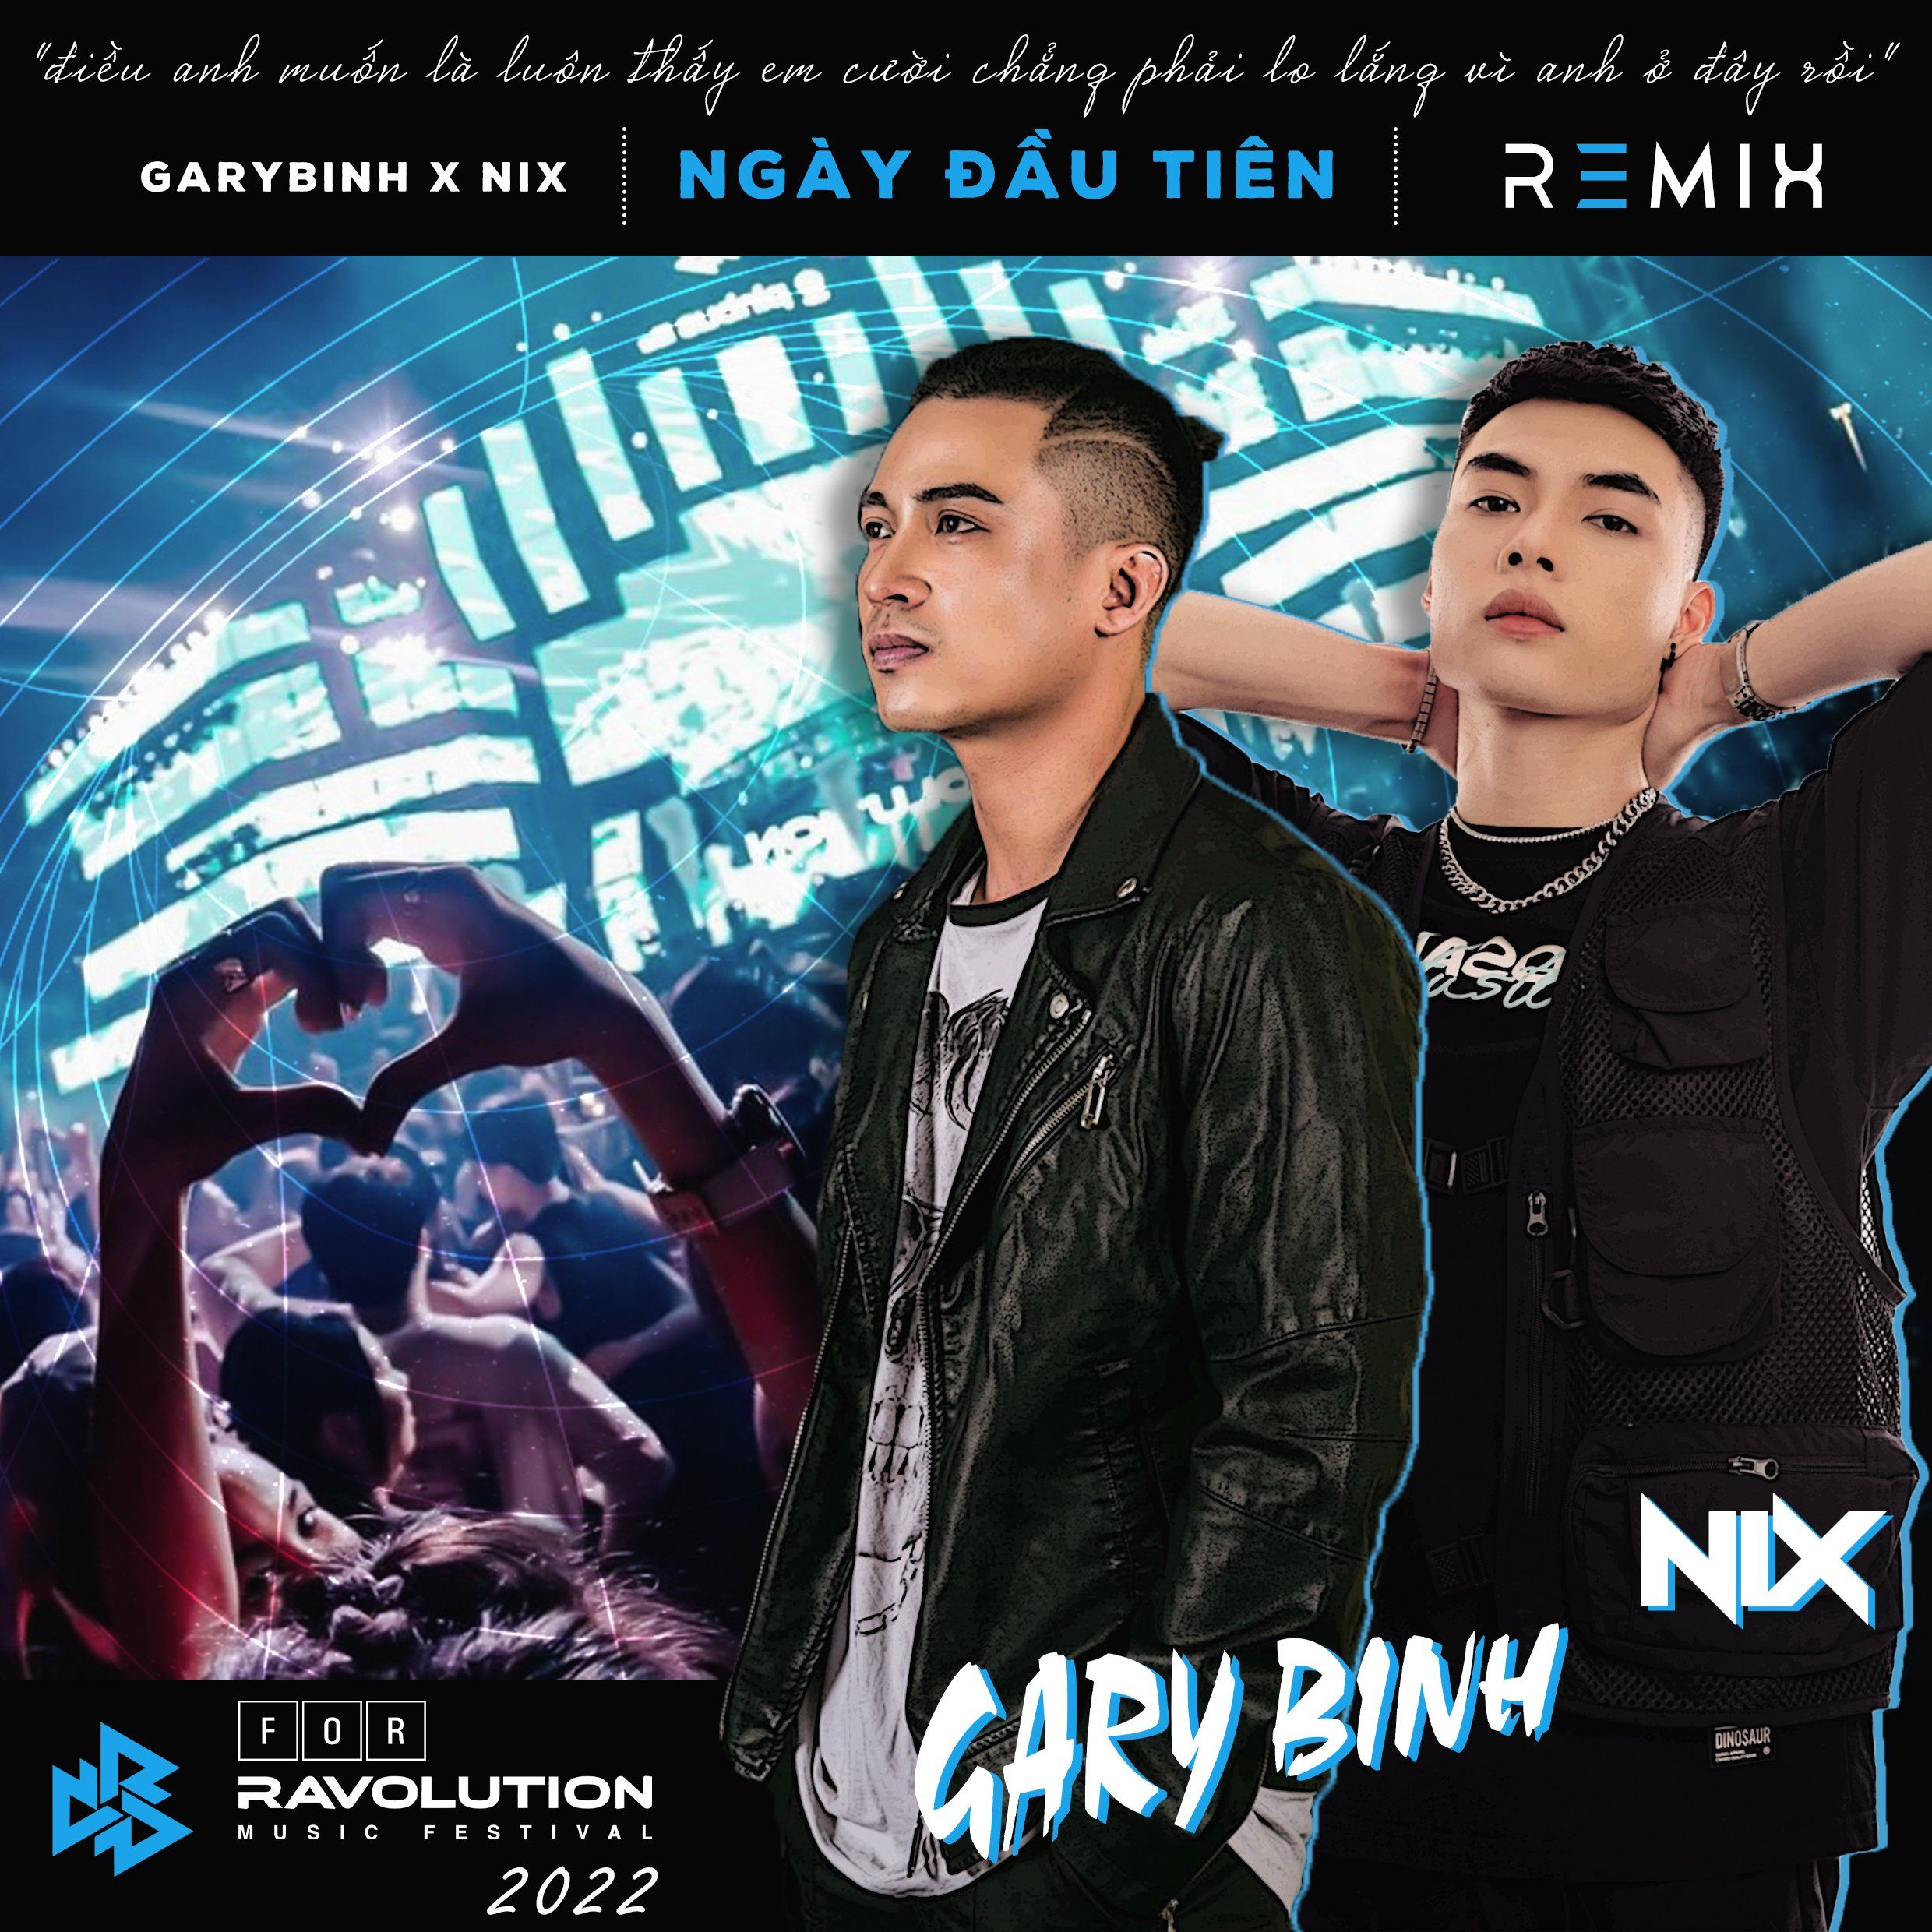 ดาวน์โหลด Đức Phúc - Ngày Đầu Tiên (Nix x Gary Bình Remix) [Ravolution Music Festival Version]